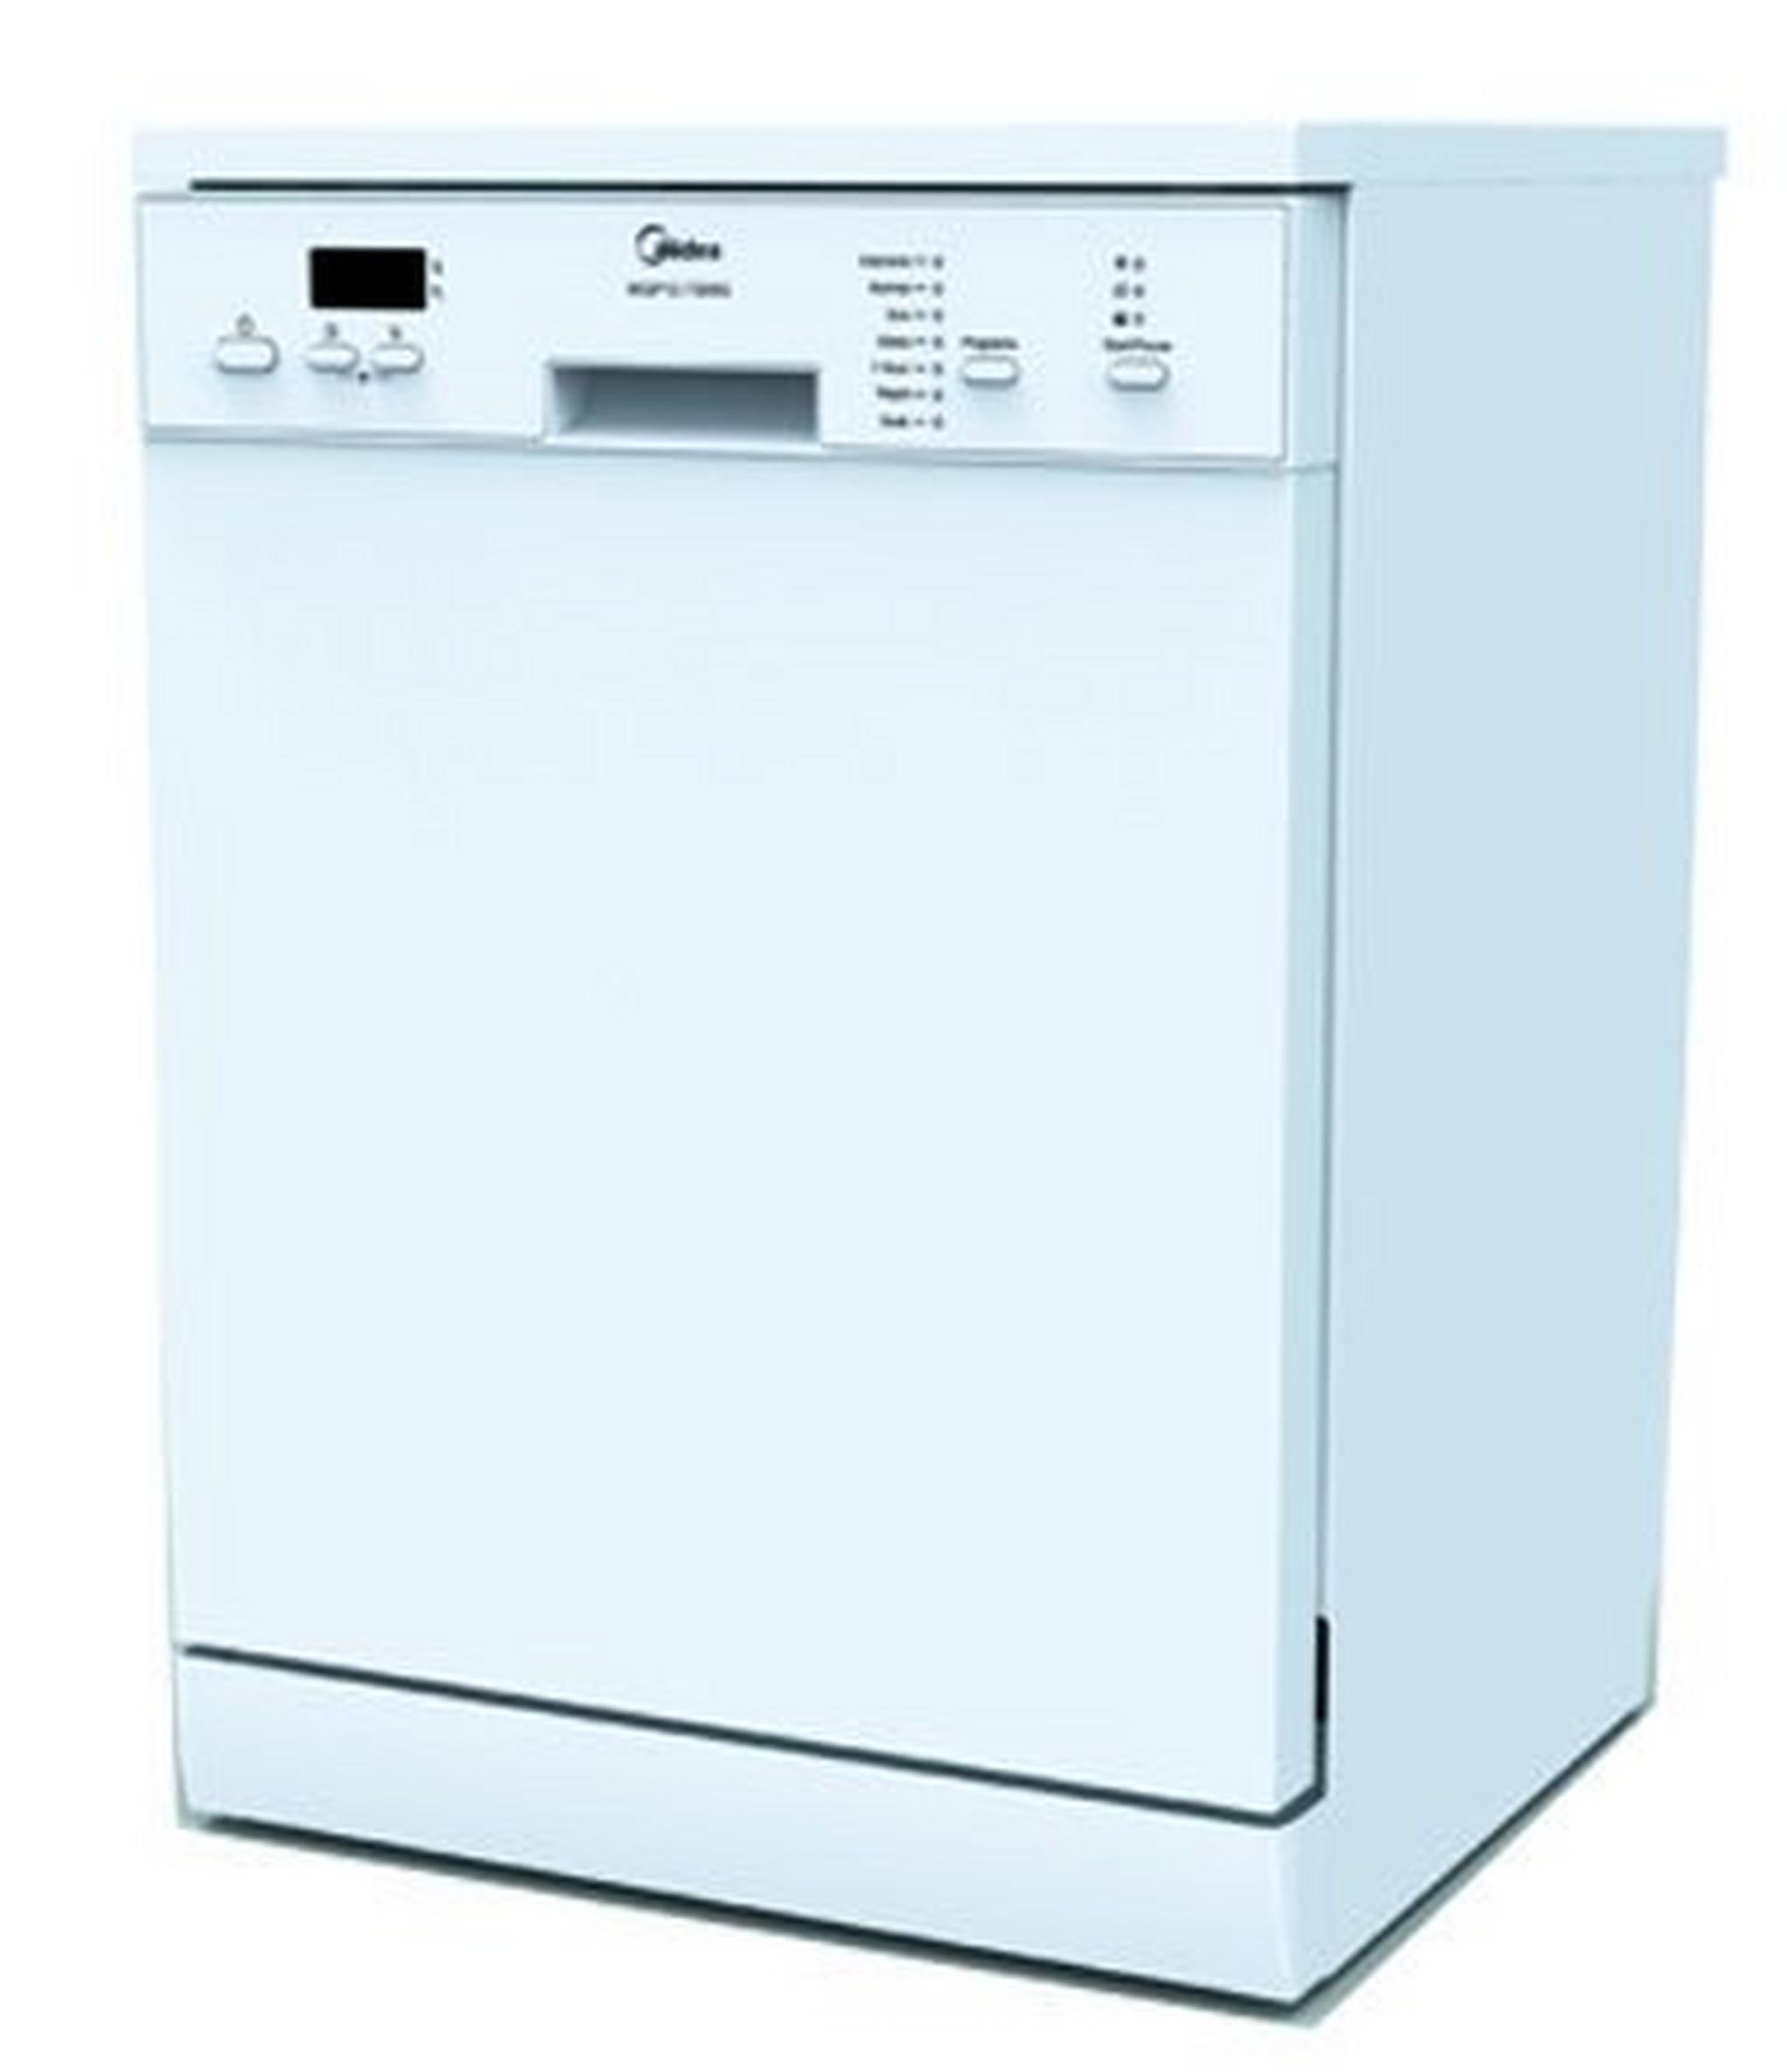 Midea 7 Program Dishwasher - White MWQP127609G